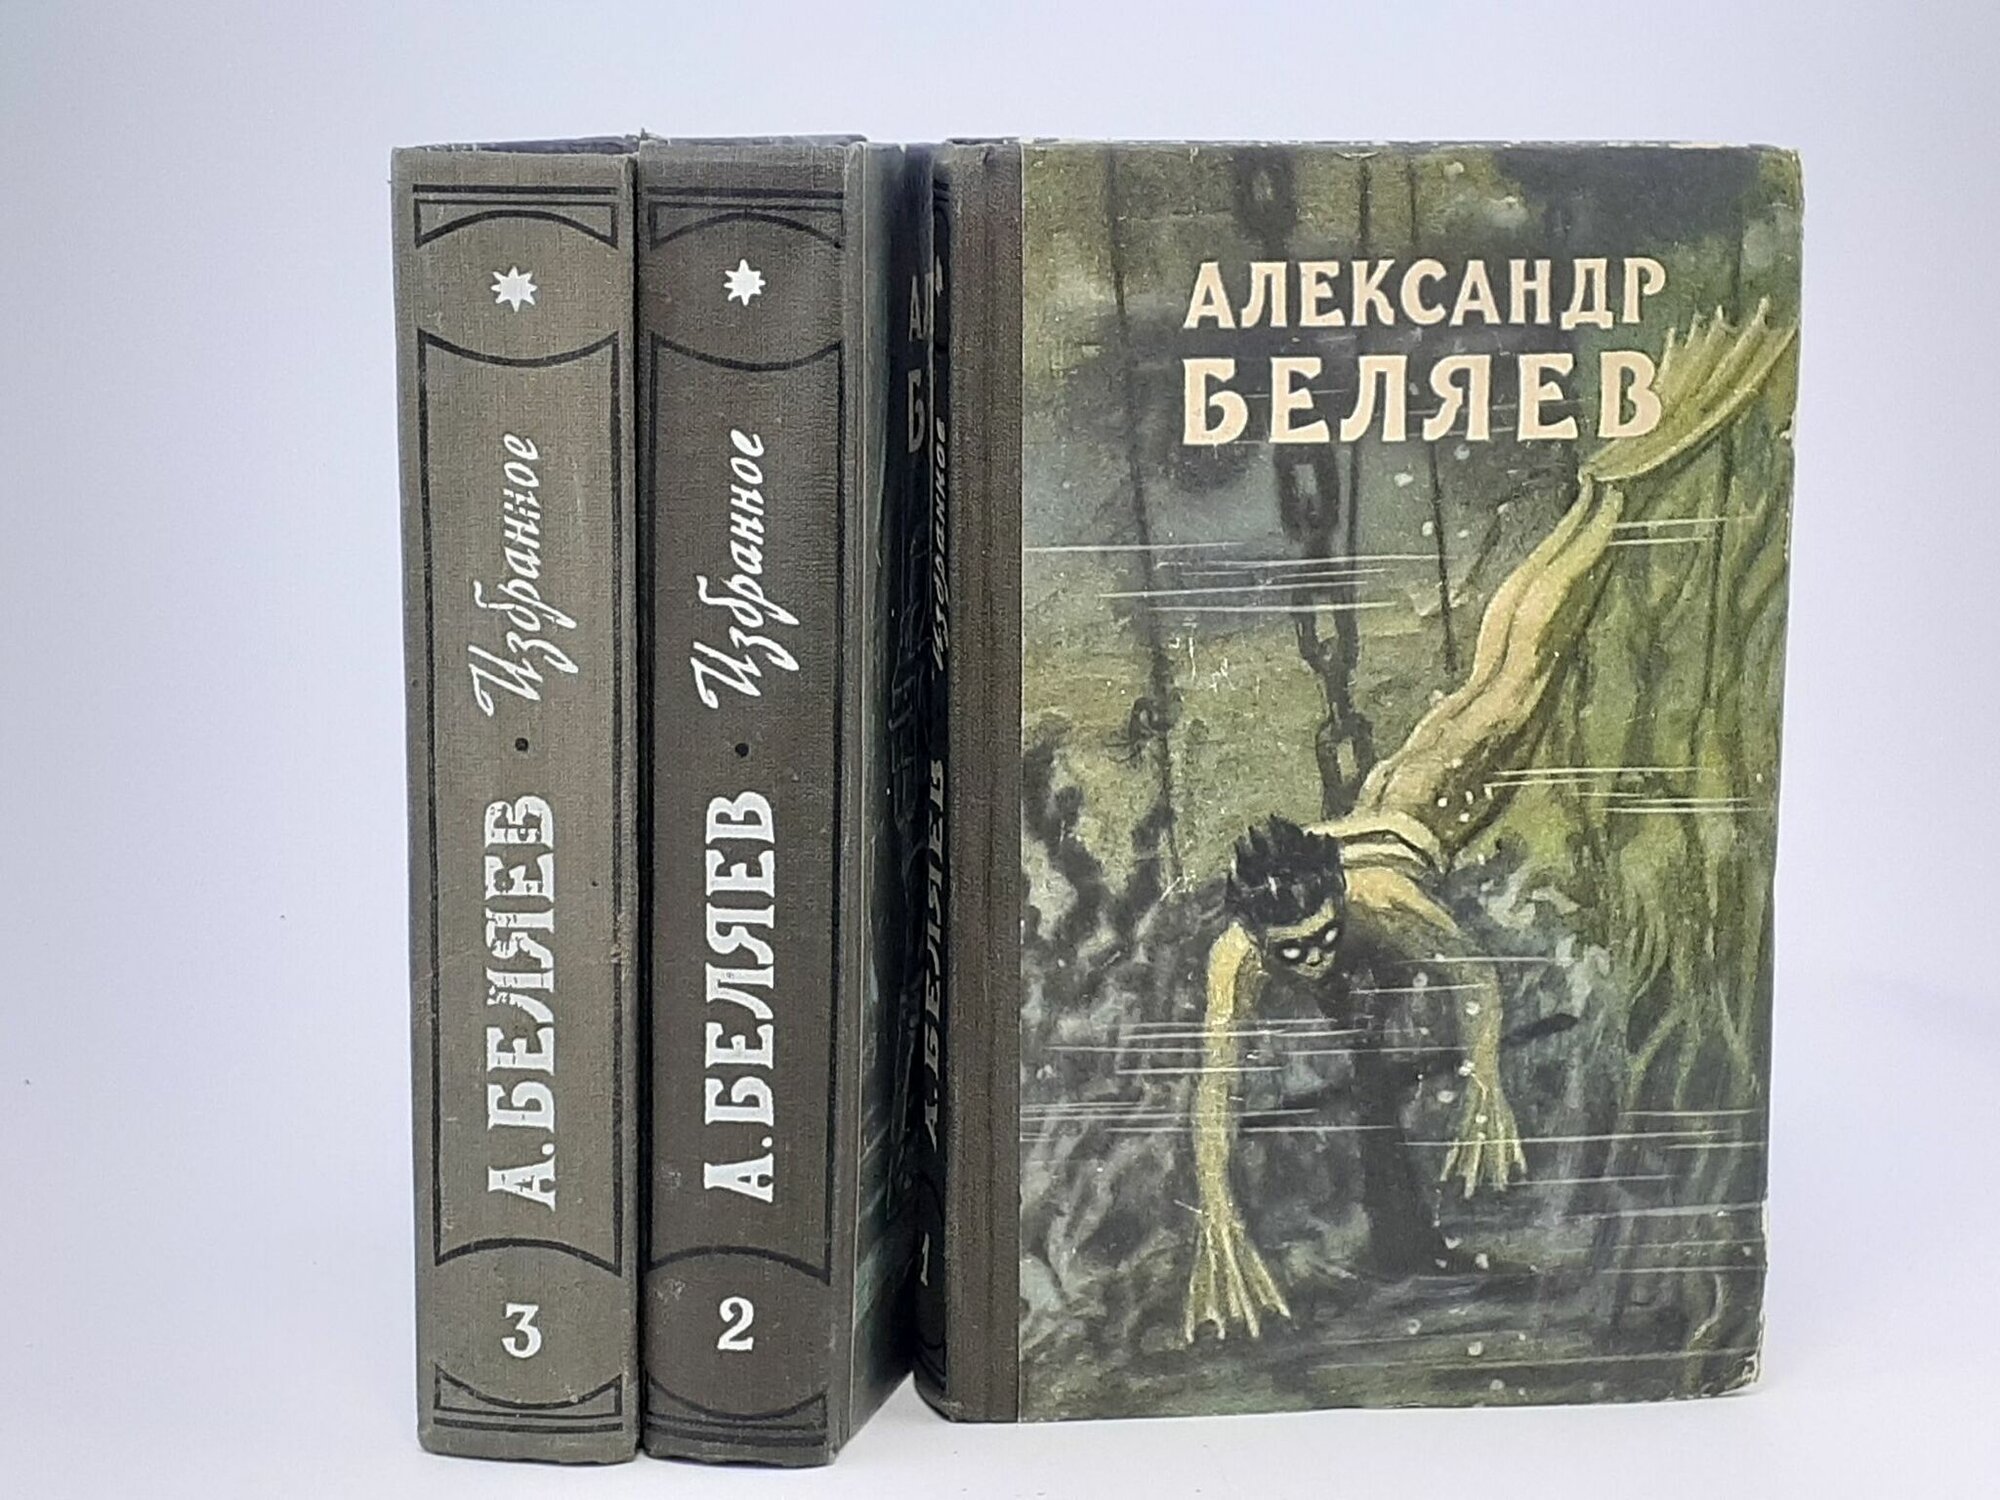 Александр Беляев. Избранные научно-фантастические произведения (комплект из 3 книг)